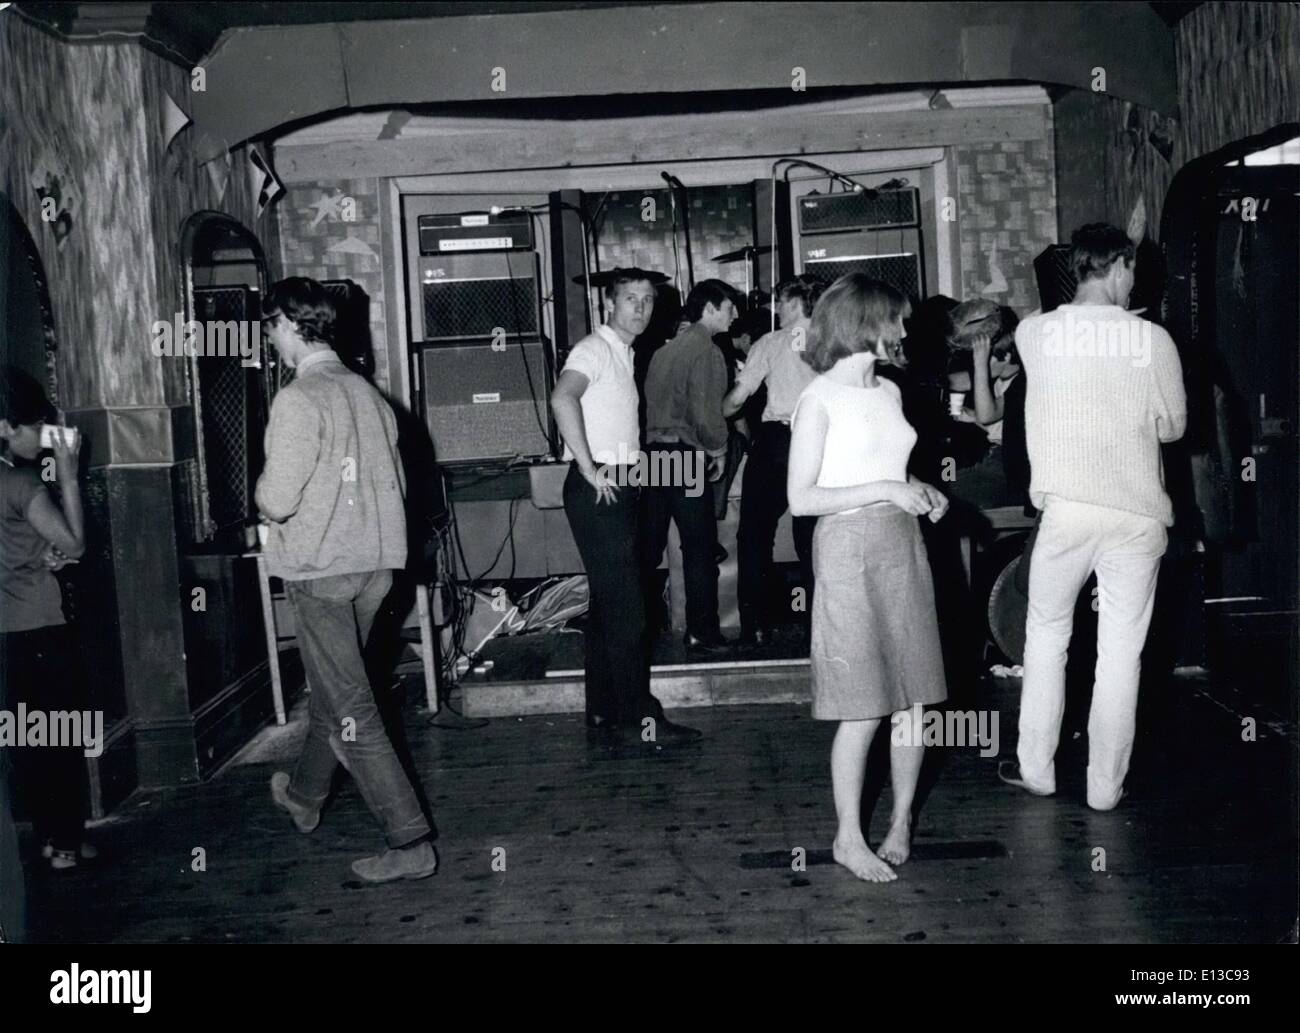 Marzo 02, 2012 - la danza cuando lo sientes en el hotel sólo para adolescentes, hay juke boxes en el salón, así como diversos grupos de visitantes. Foto de stock